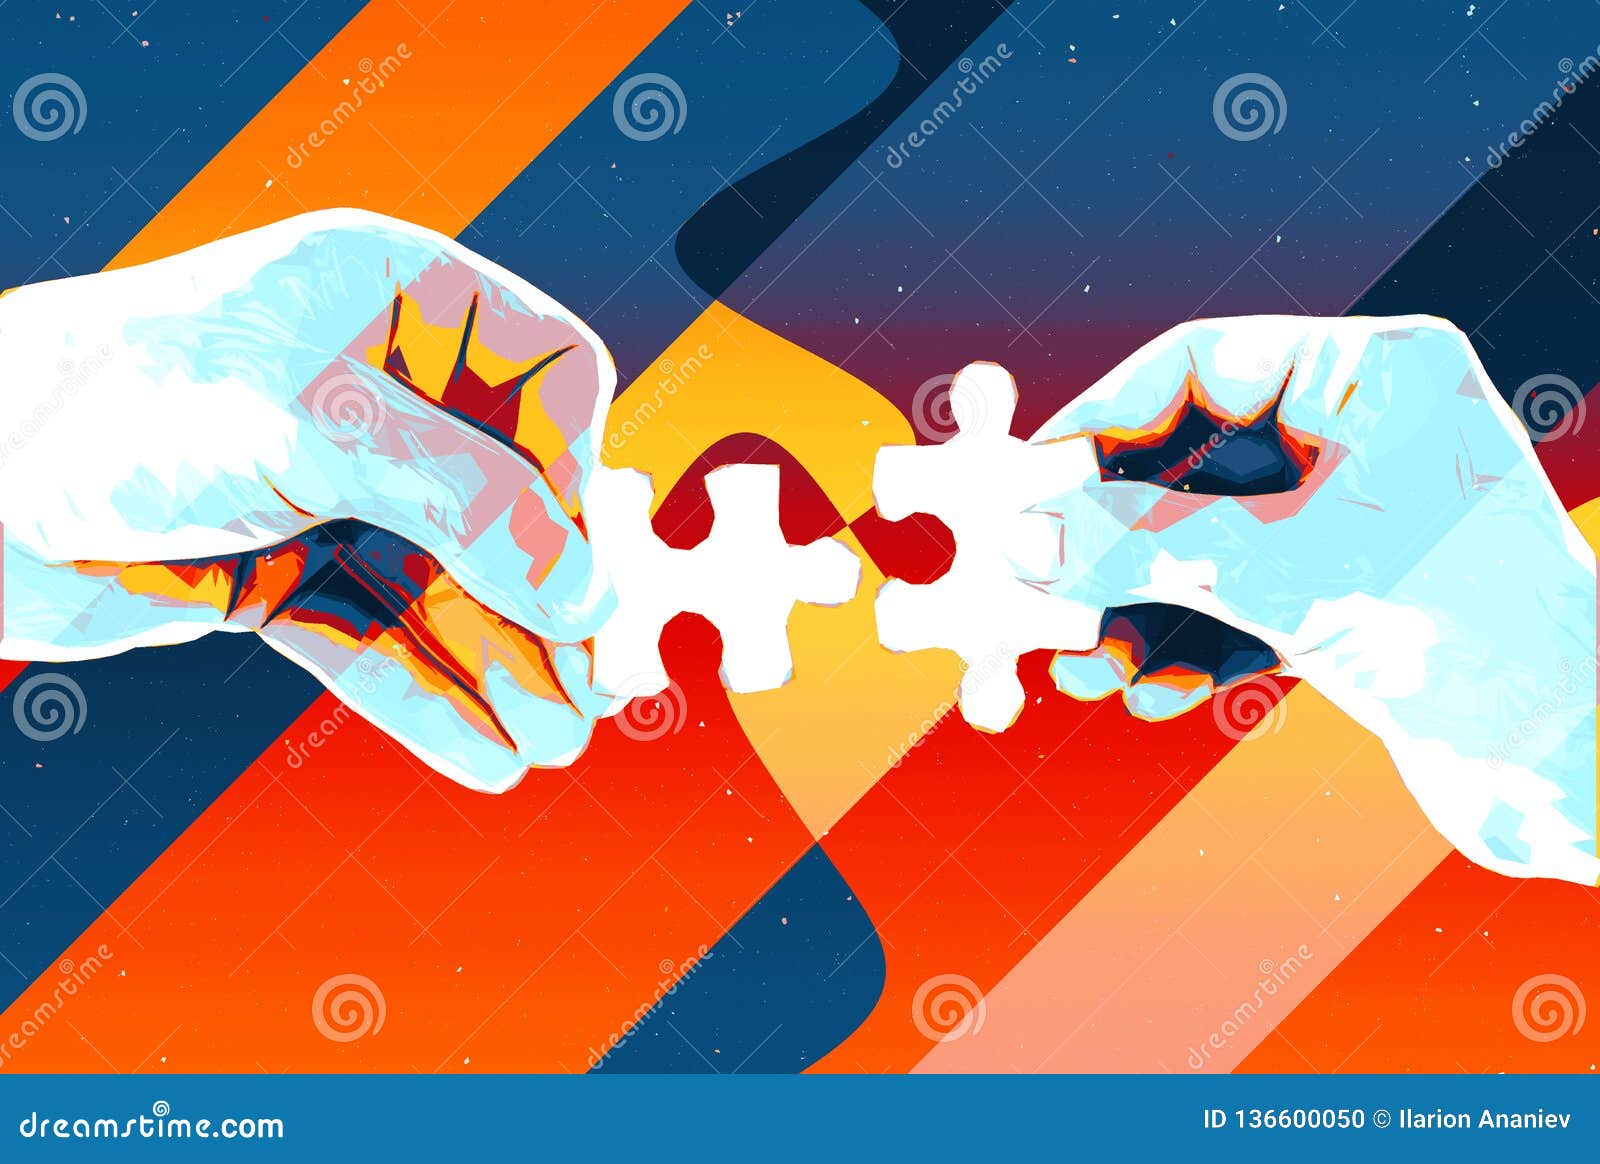 Ręki z dwa łamigłówka kawałków abstrakcjonistycznym tłem, nowożytną ilustracją dla pracy zespołowej, partnerstwem, związkiem, zwi. Ręki z dwa łamigłówka kawałków abstrakcjonistycznym tłem, nowożytna ilustracja dla pracy zespołowej, partnerstwa, związku, związku i współpracy biznesowego projekta,